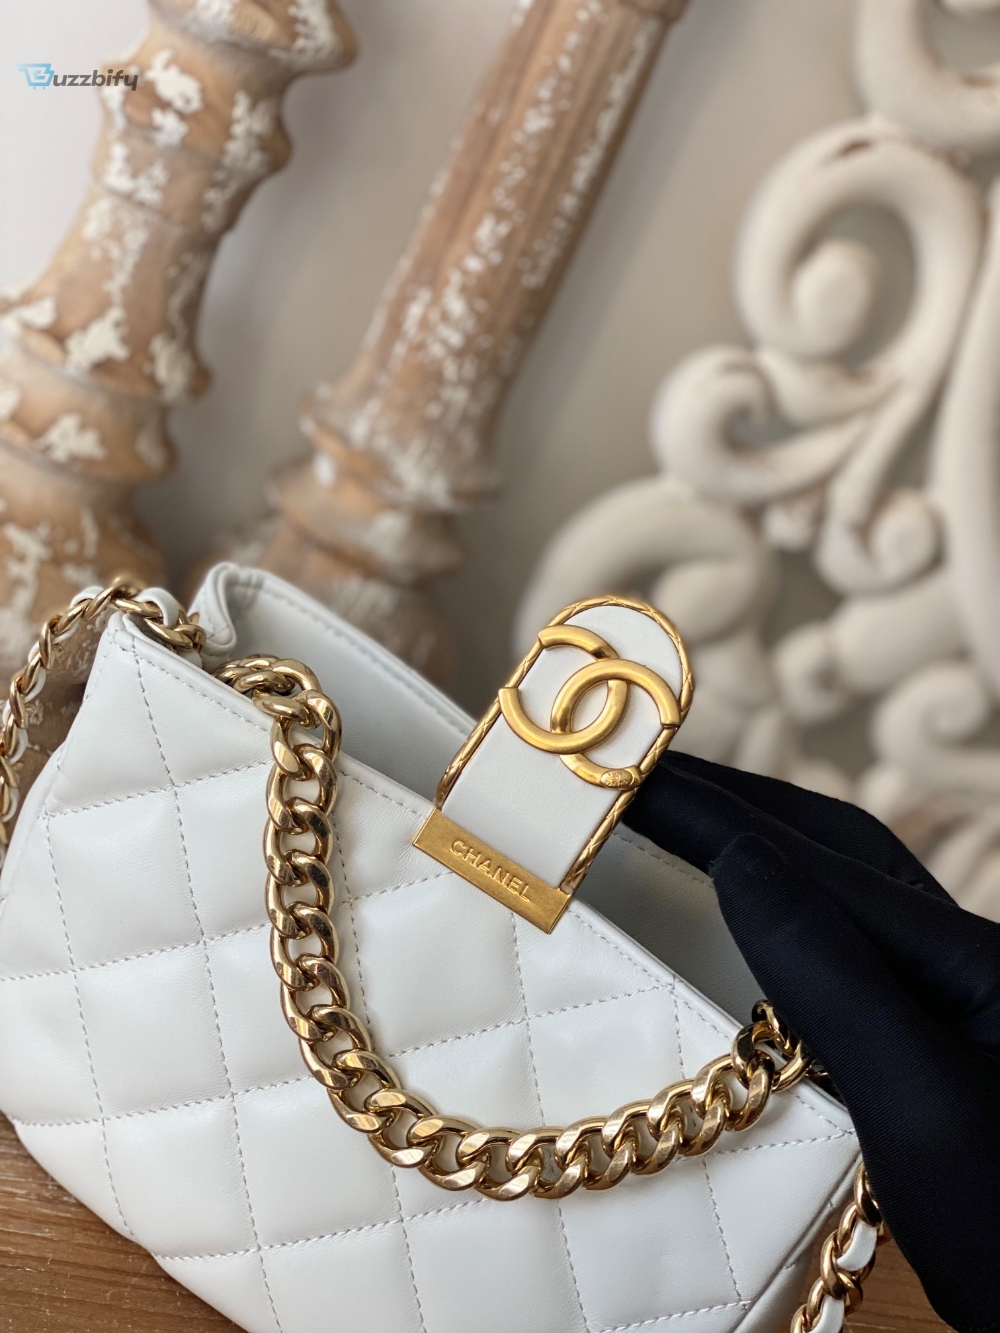 Chanel Small Hobo Bag Gold Hardware White For Women Womens Handbags Shoulder Bags